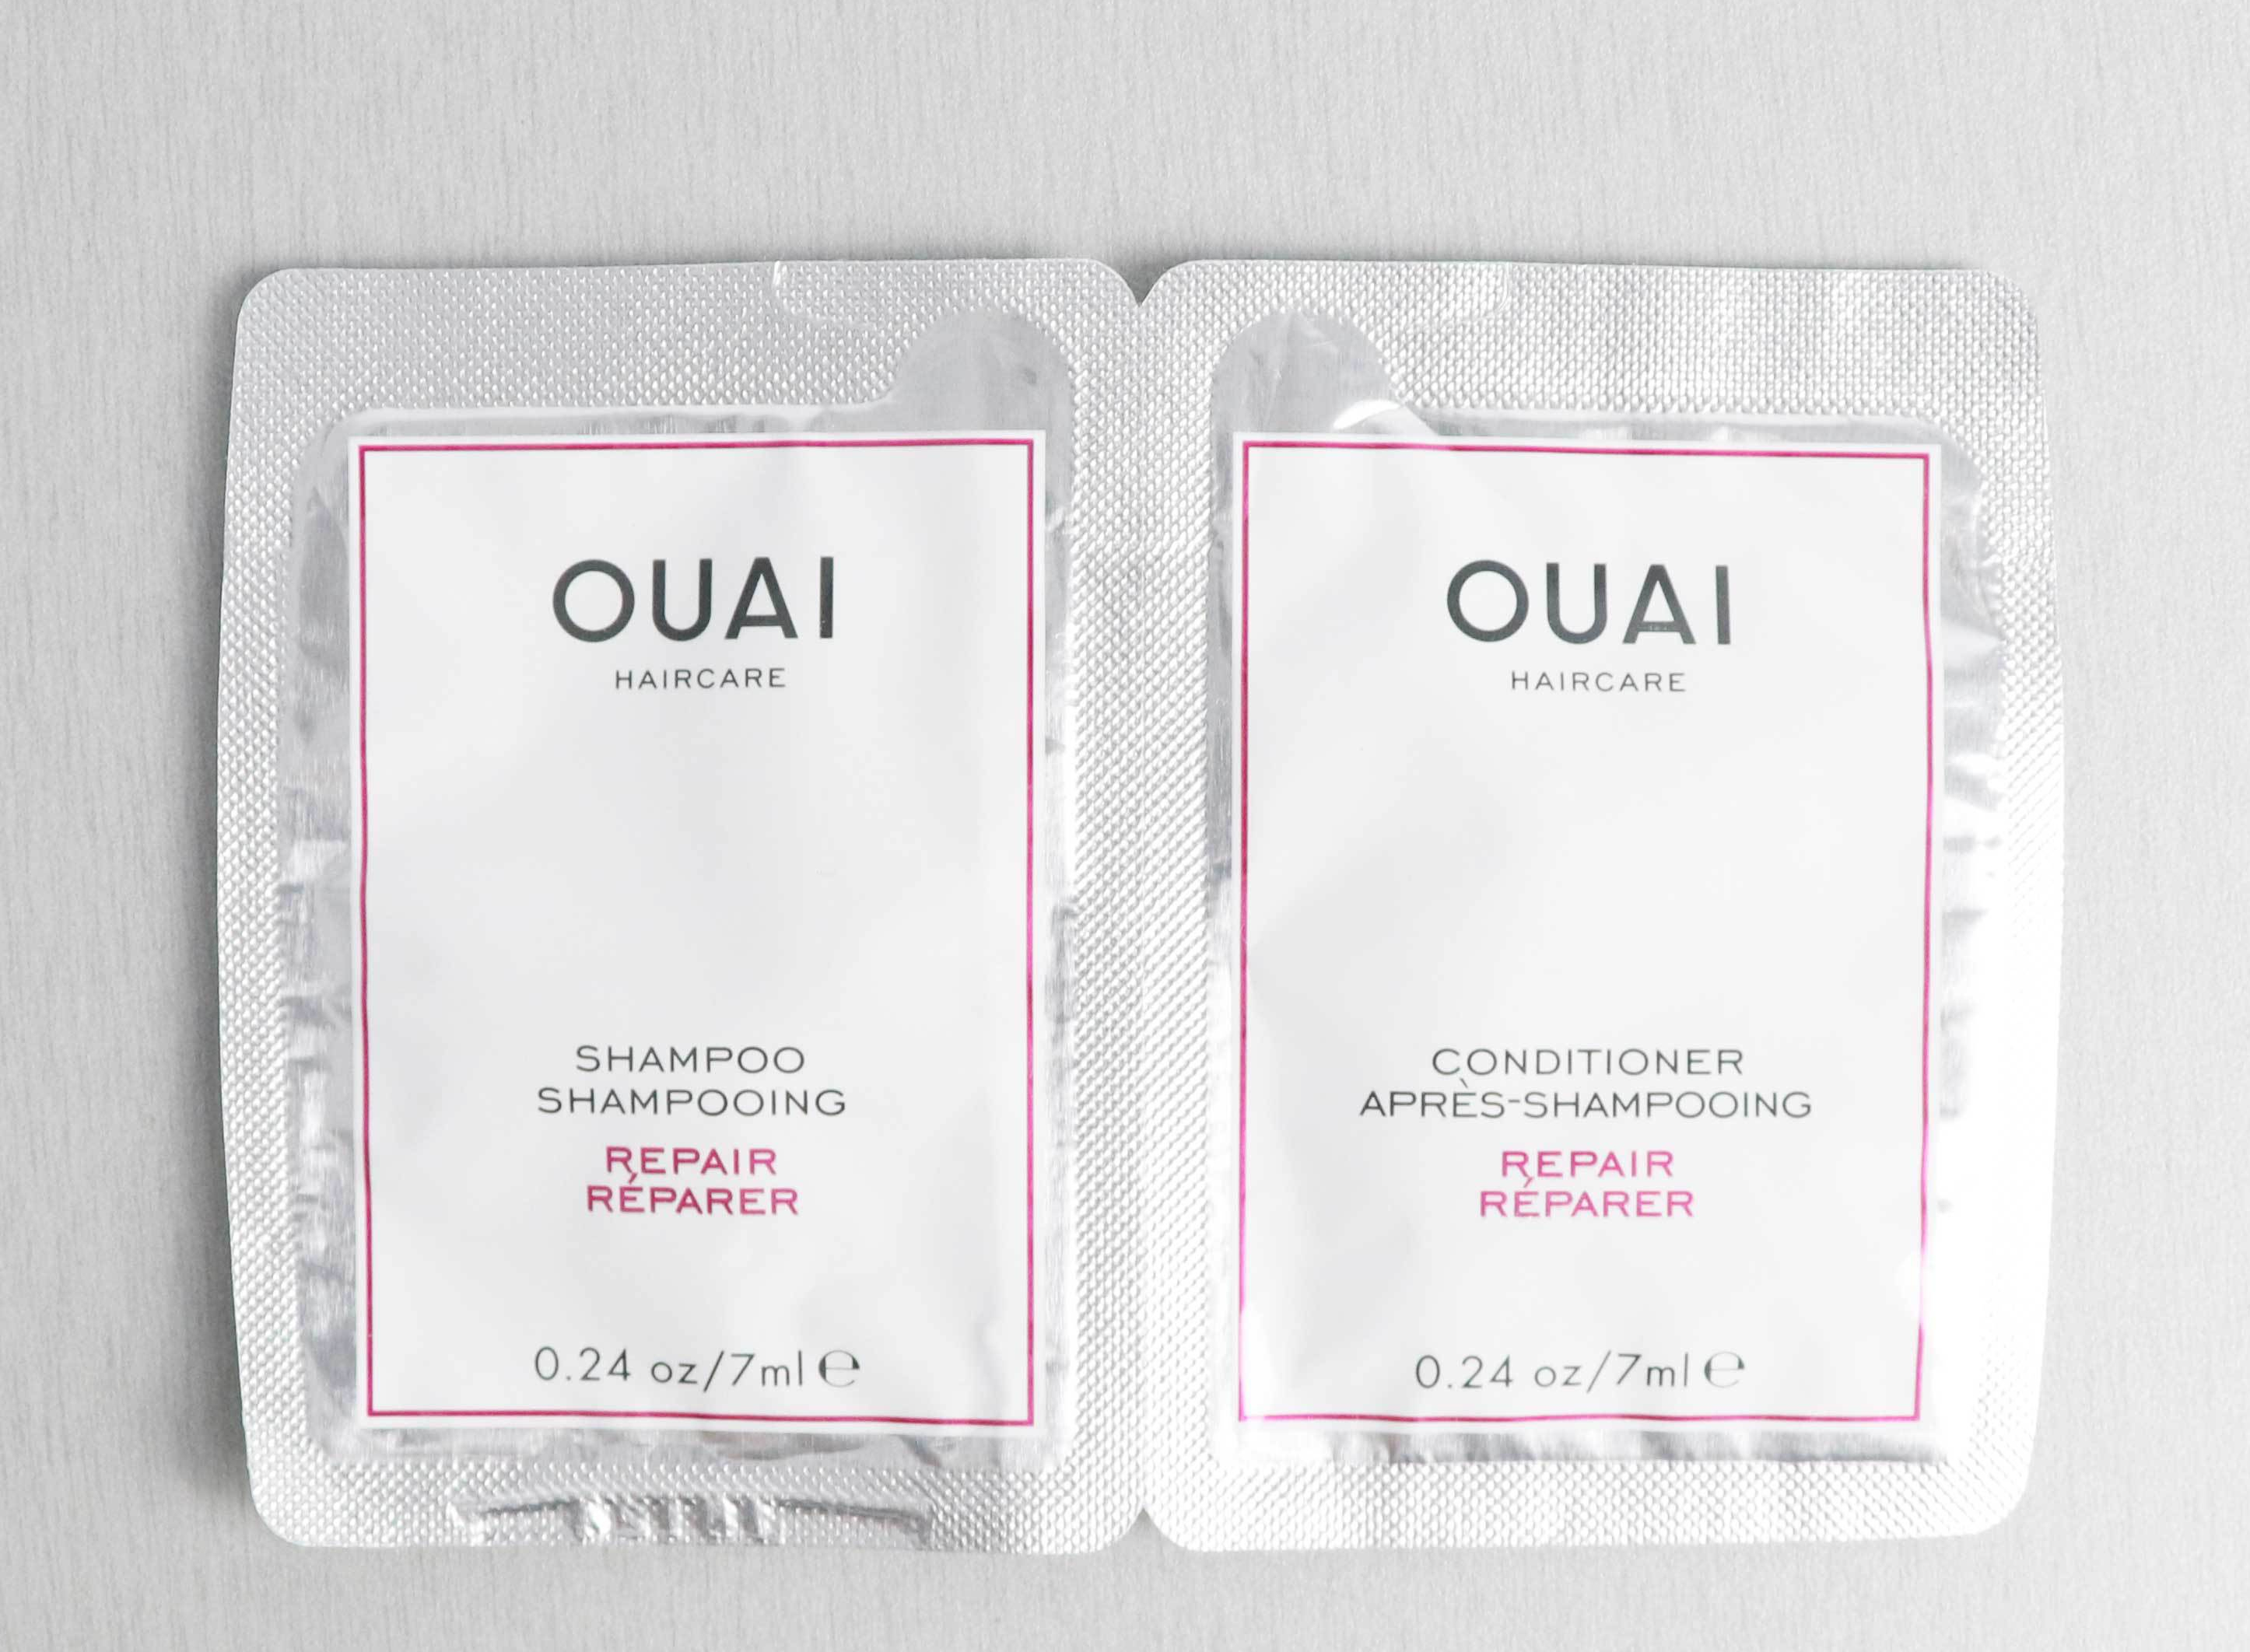 Ouai - Repair shampoo and Conditioner